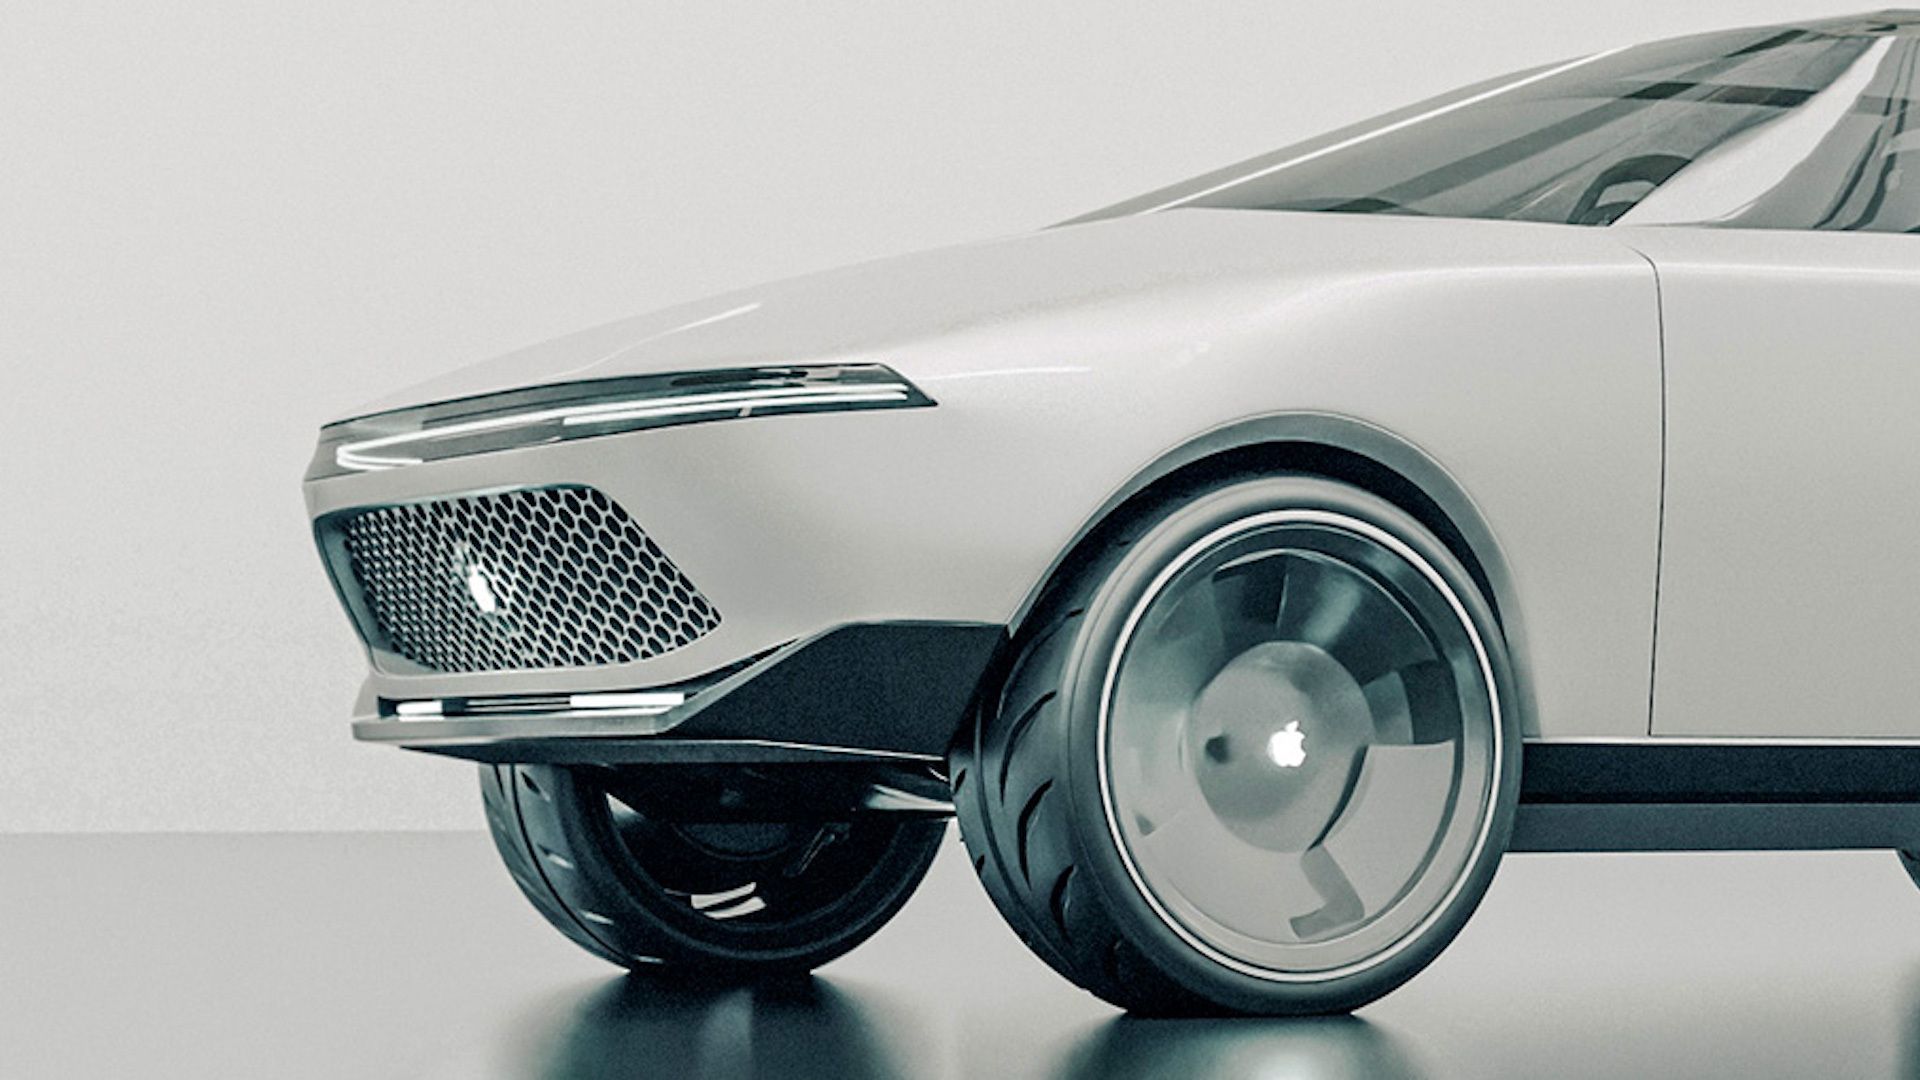 Apple работает над созданием полностью автономного автомобиля без руля и педалей, планируя выпустить его в 2025 году